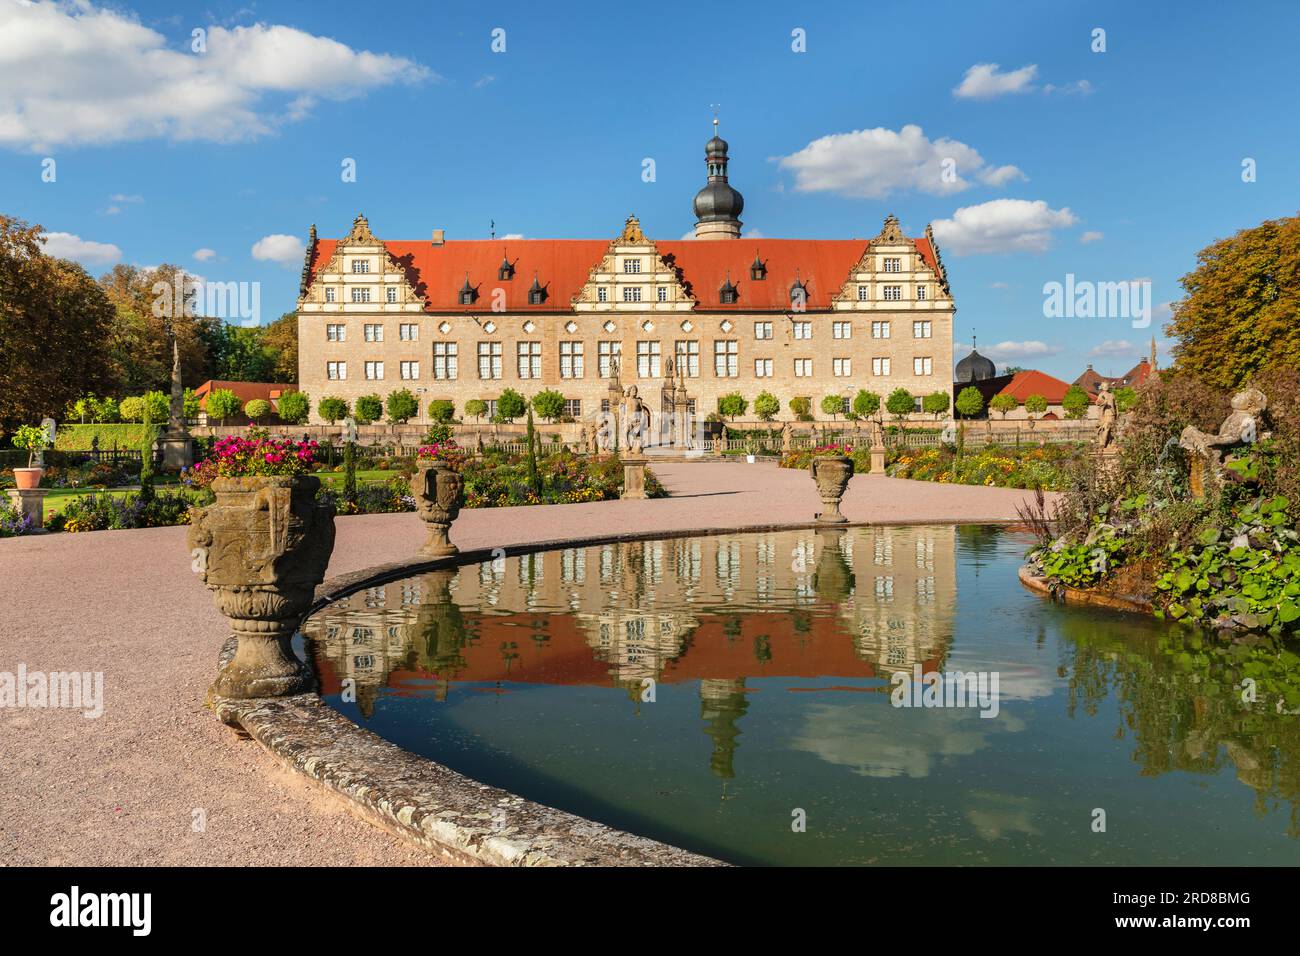 Château Renaissance de Weikersheim avec jardin baroque dans la vallée de Taubertal, Weikersheim, route romantique, Bade-Wurtemberg, Allemagne, Europe Banque D'Images